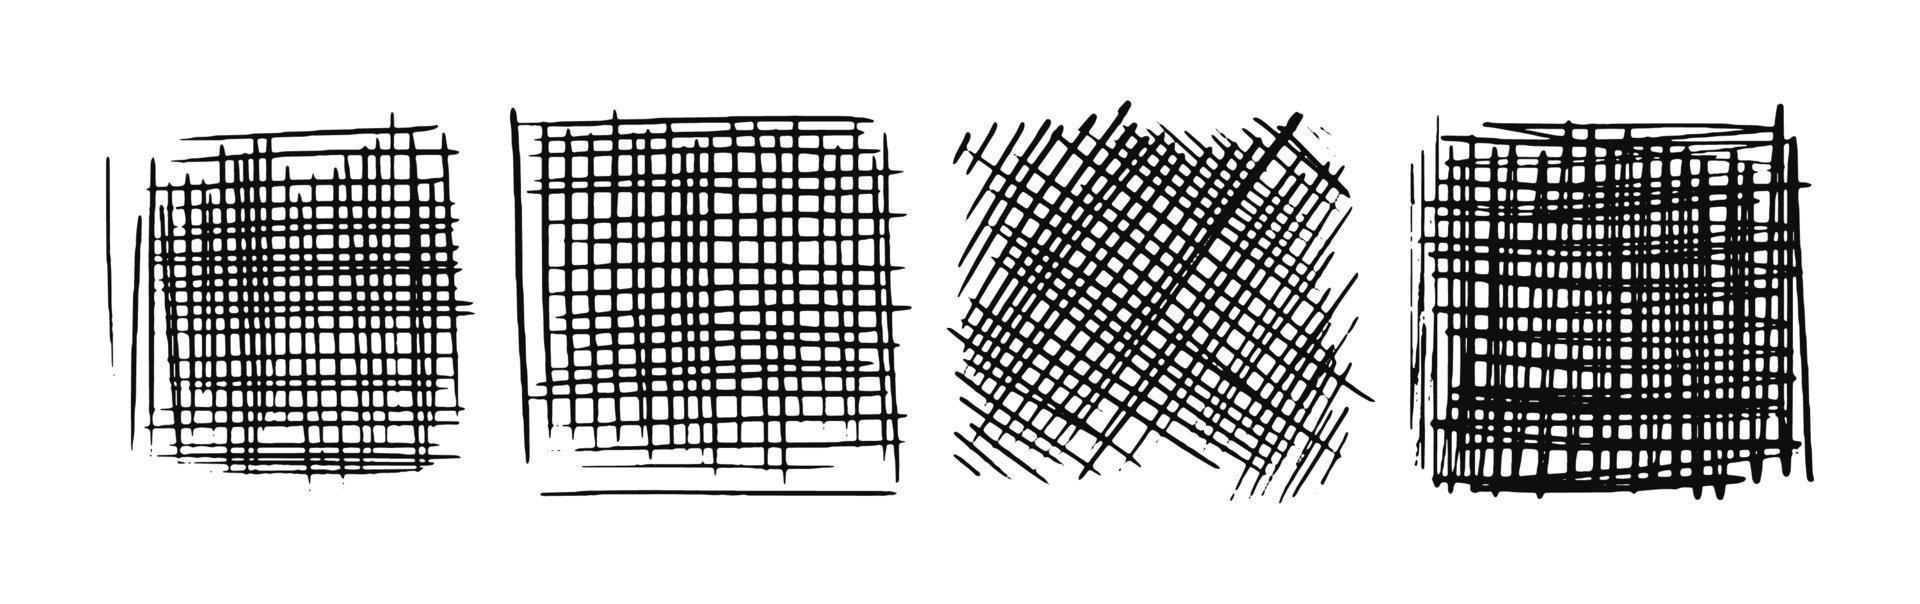 gezeichnete schraffierte Quadrate. eine Reihe von handgezeichneten, durchgestrichenen Kritzeleien. diagonale, vertikale oder parallele quadratische Striche. vektorvorratillustration lokalisiert auf weiß. vektor